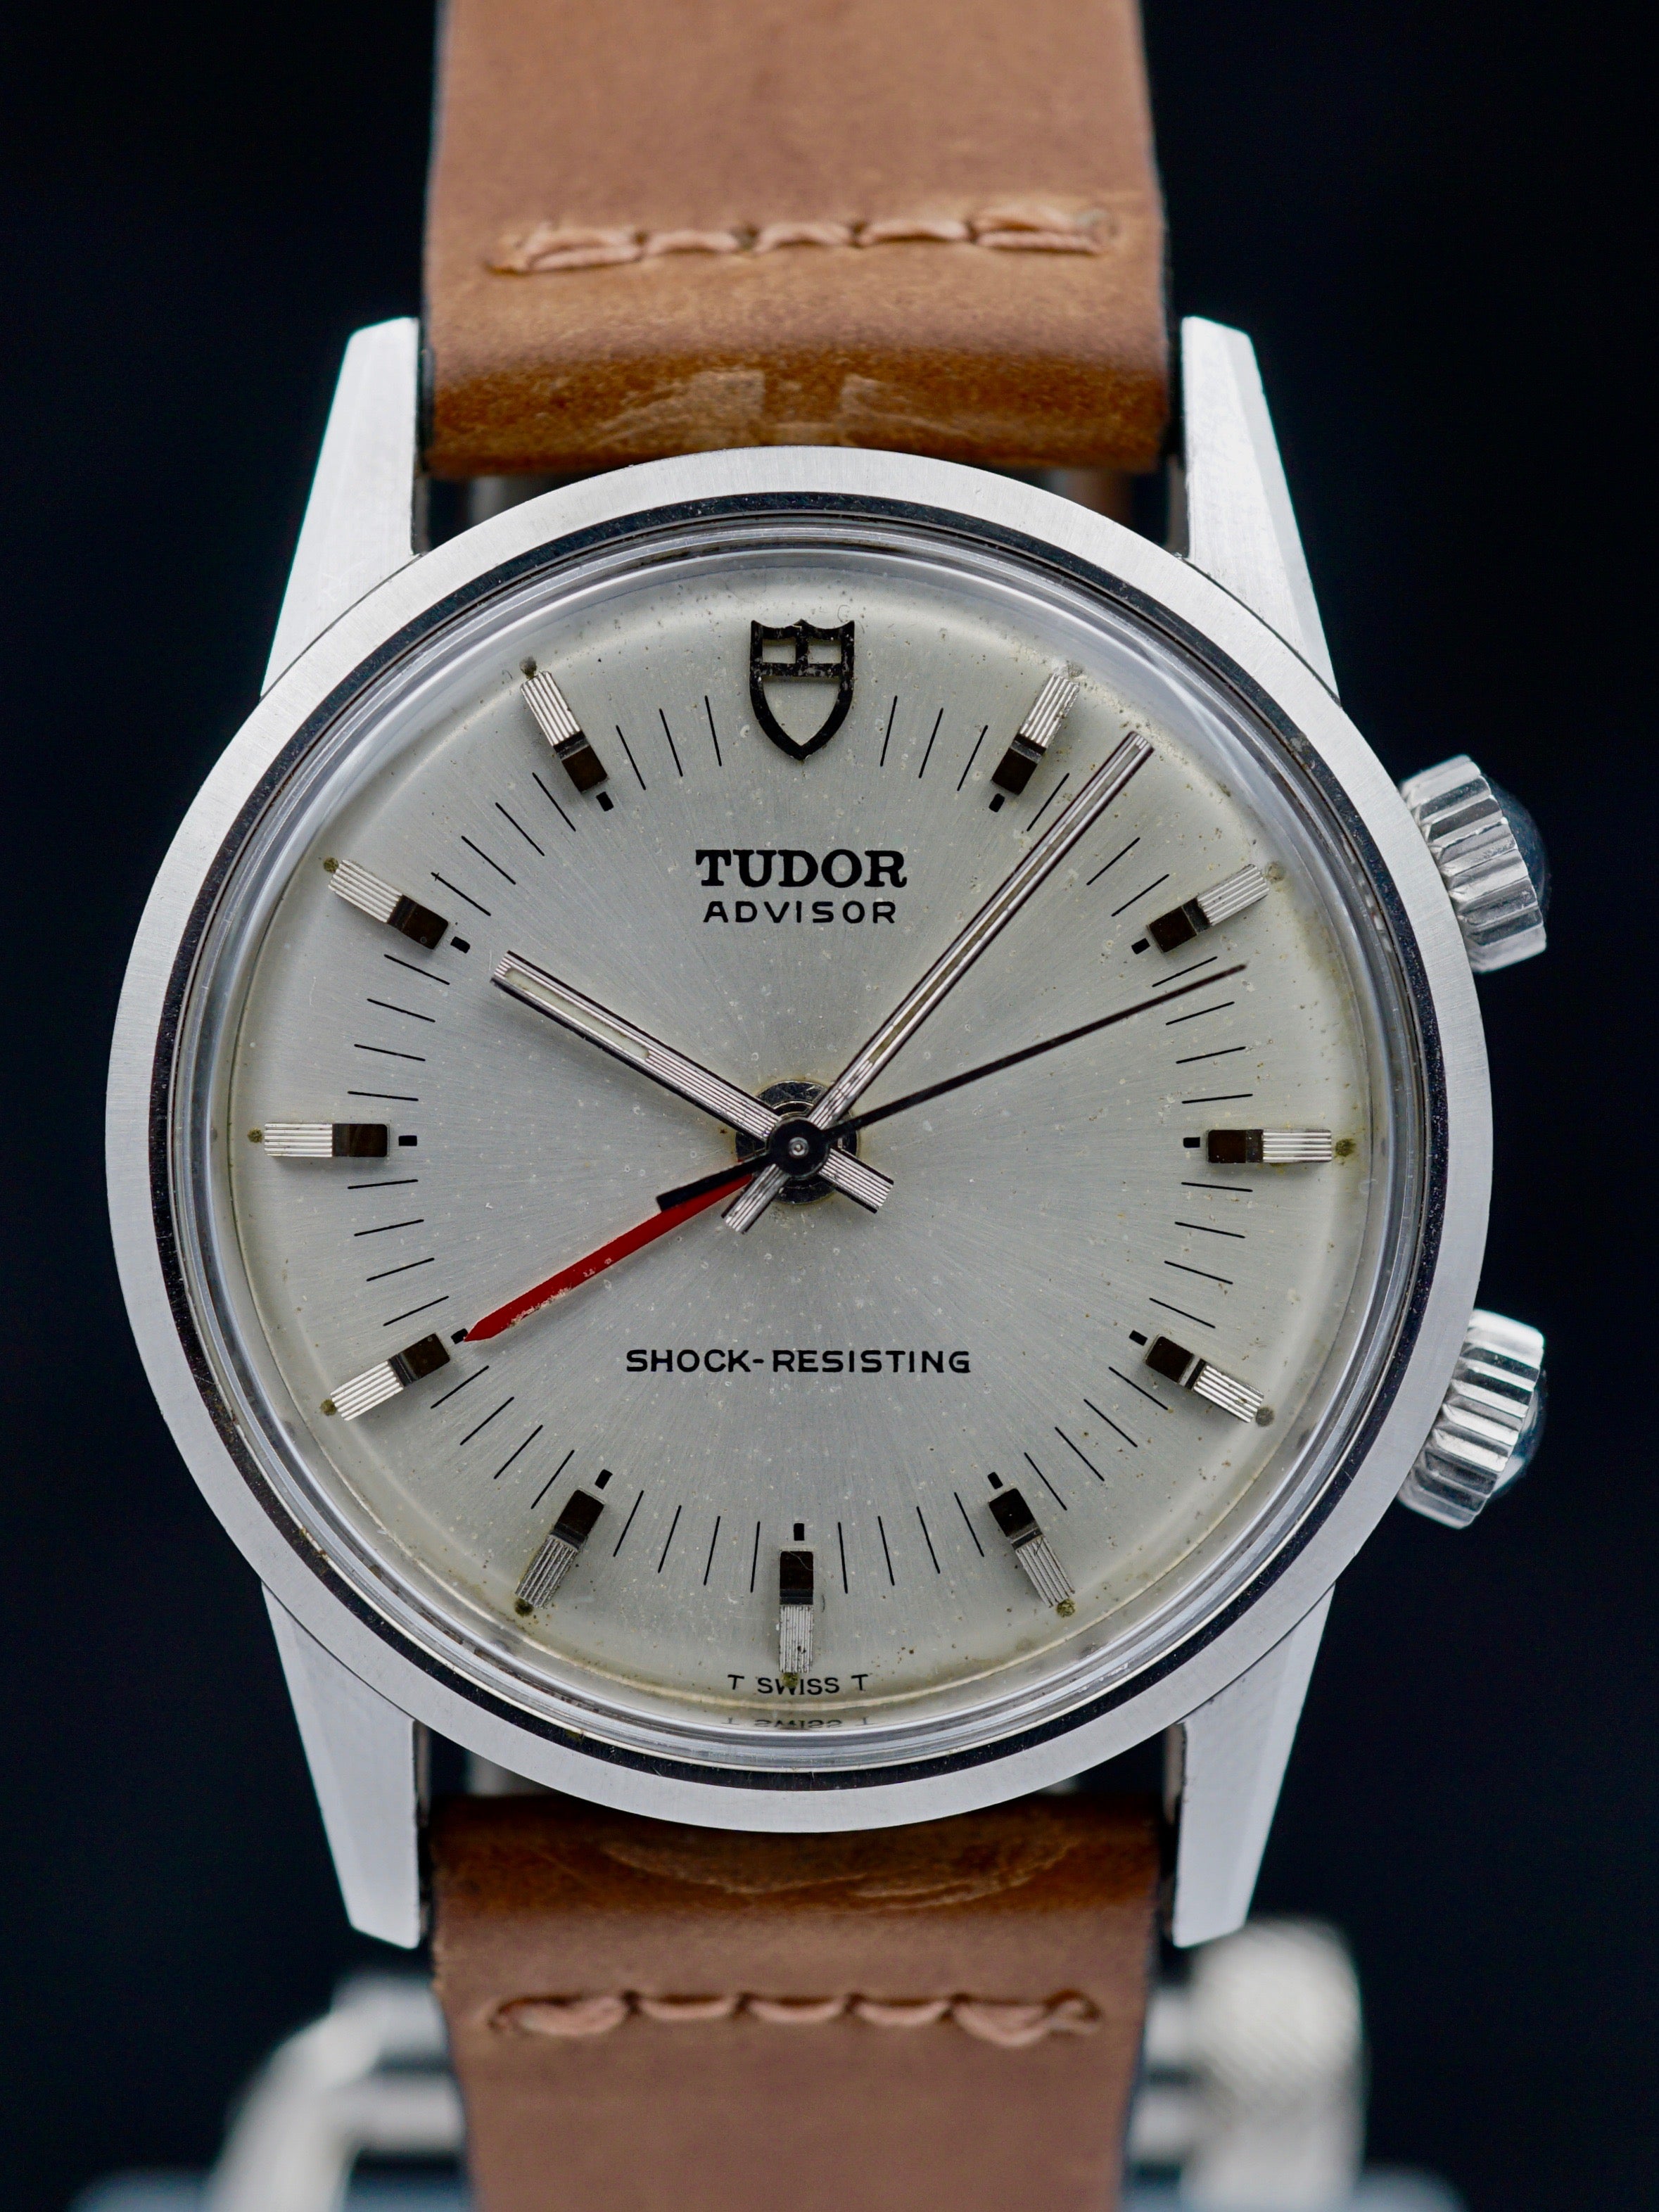 1982 Tudor Advisor Ref. 10050 “Alarm"